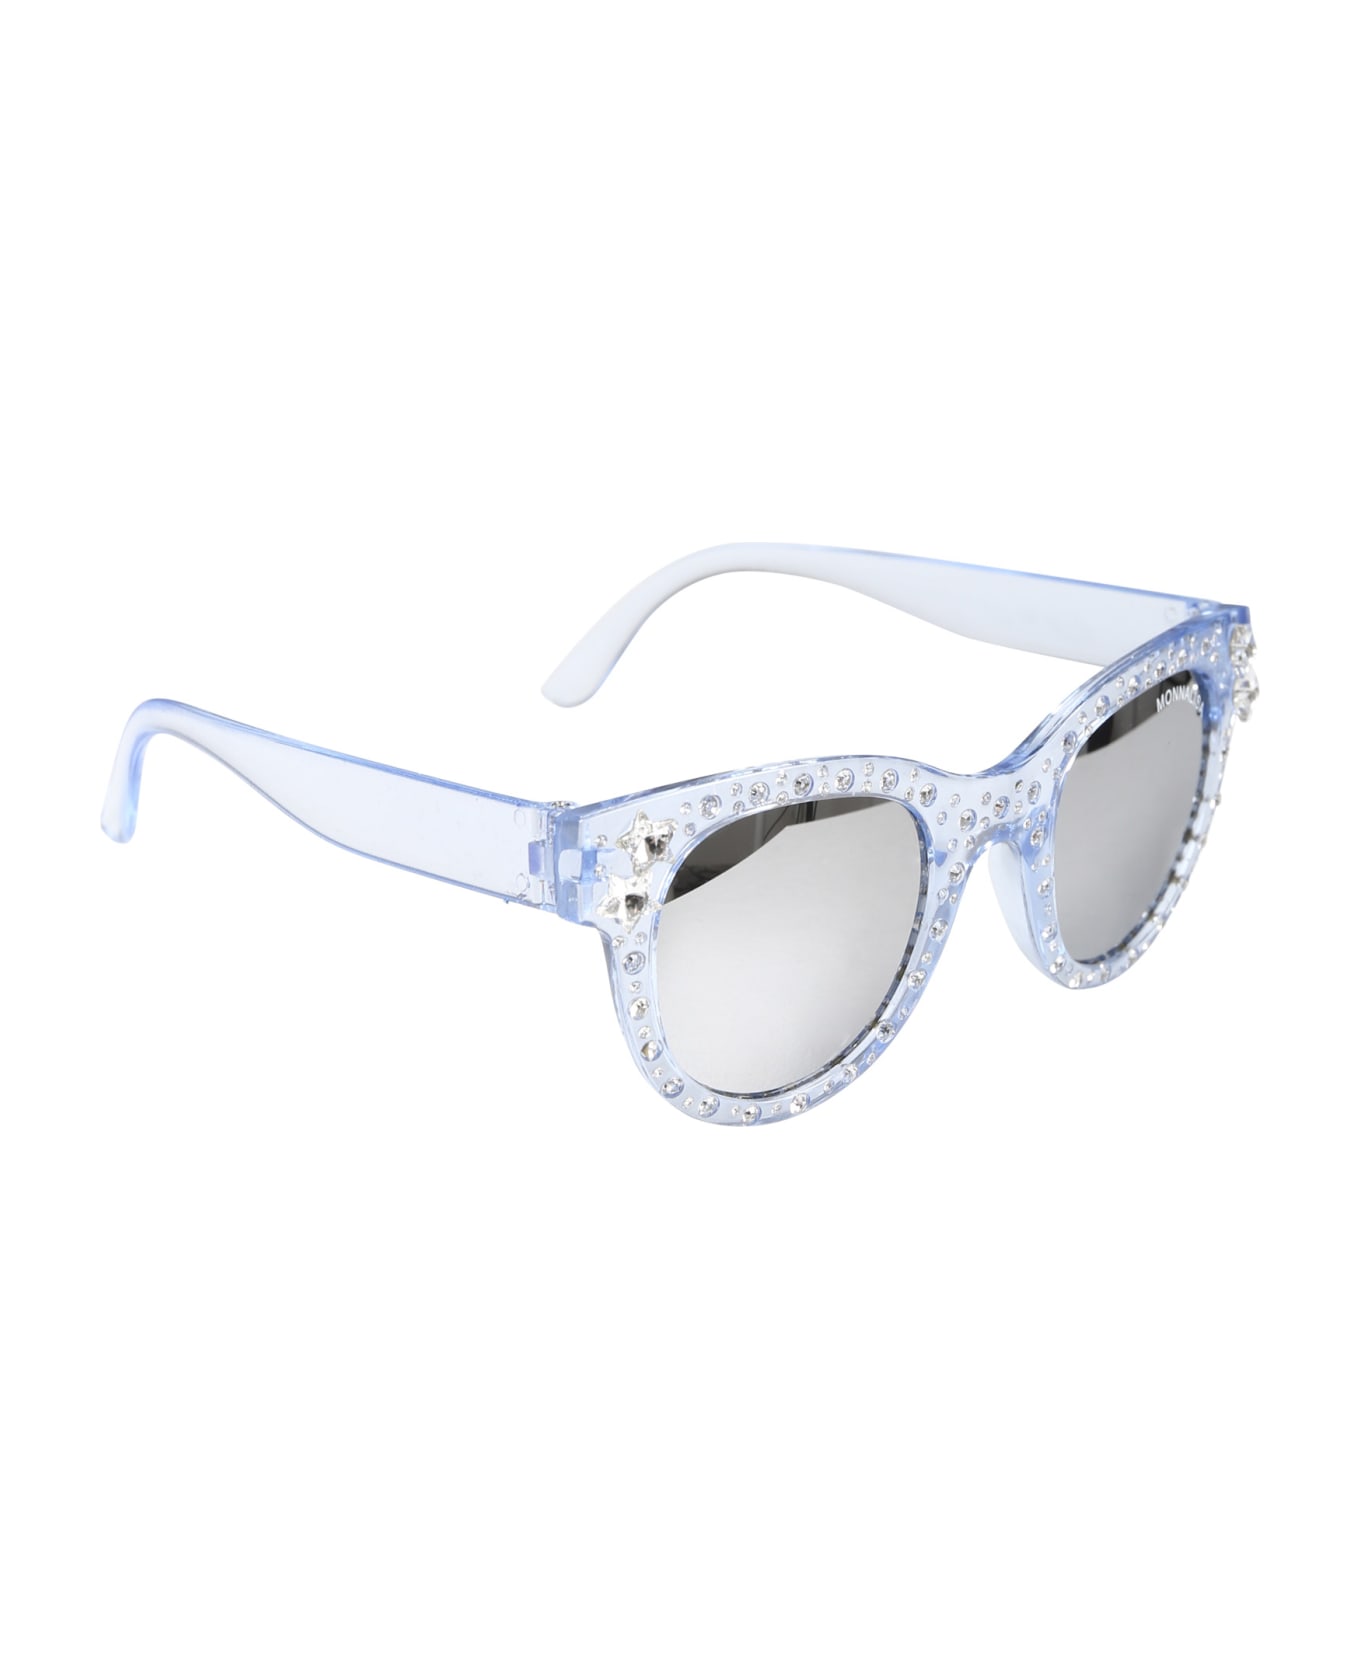 Monnalisa Sky Blue Sunglasses For Girl - Light Blue